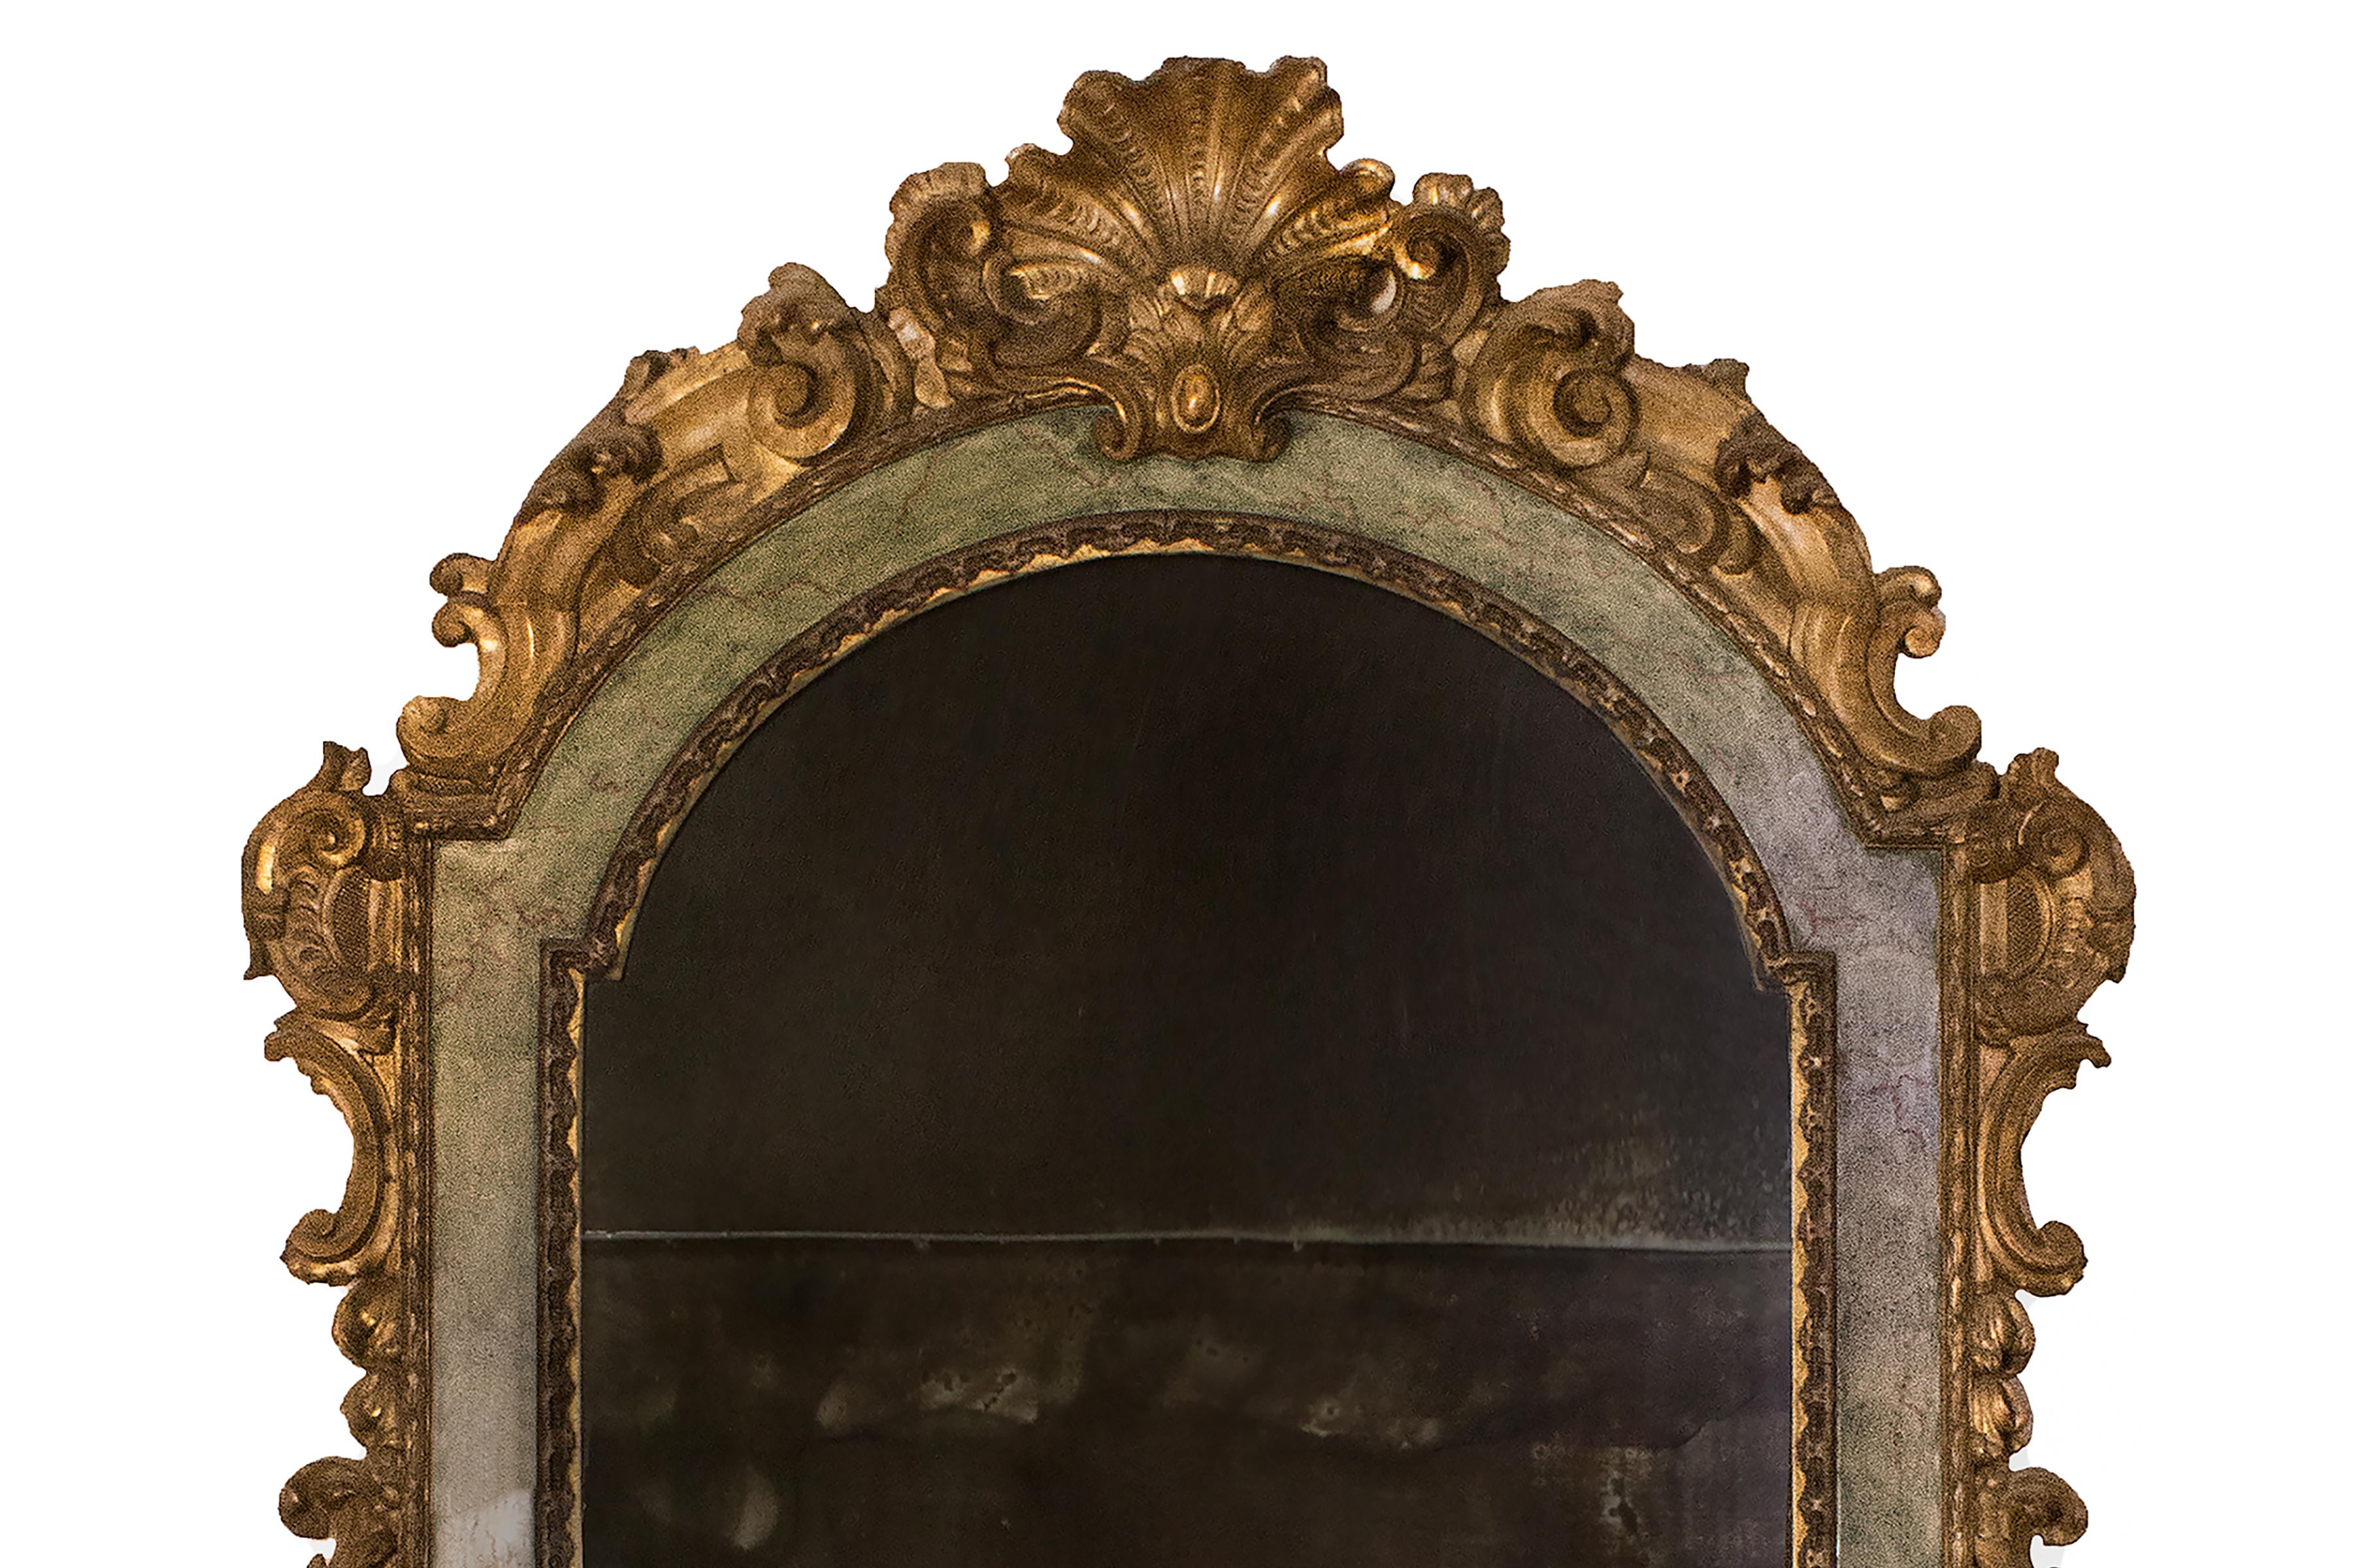 Miroir italien du XVIIIe siècle, de style rococo, peint et doré. Le cadre est décoré à la feuille d'or de feuilles et d'urnes en forme de rouleau, avec une moulure sculptée et sculptée en coquille. Il présente une incrustation peinte marbrée avec